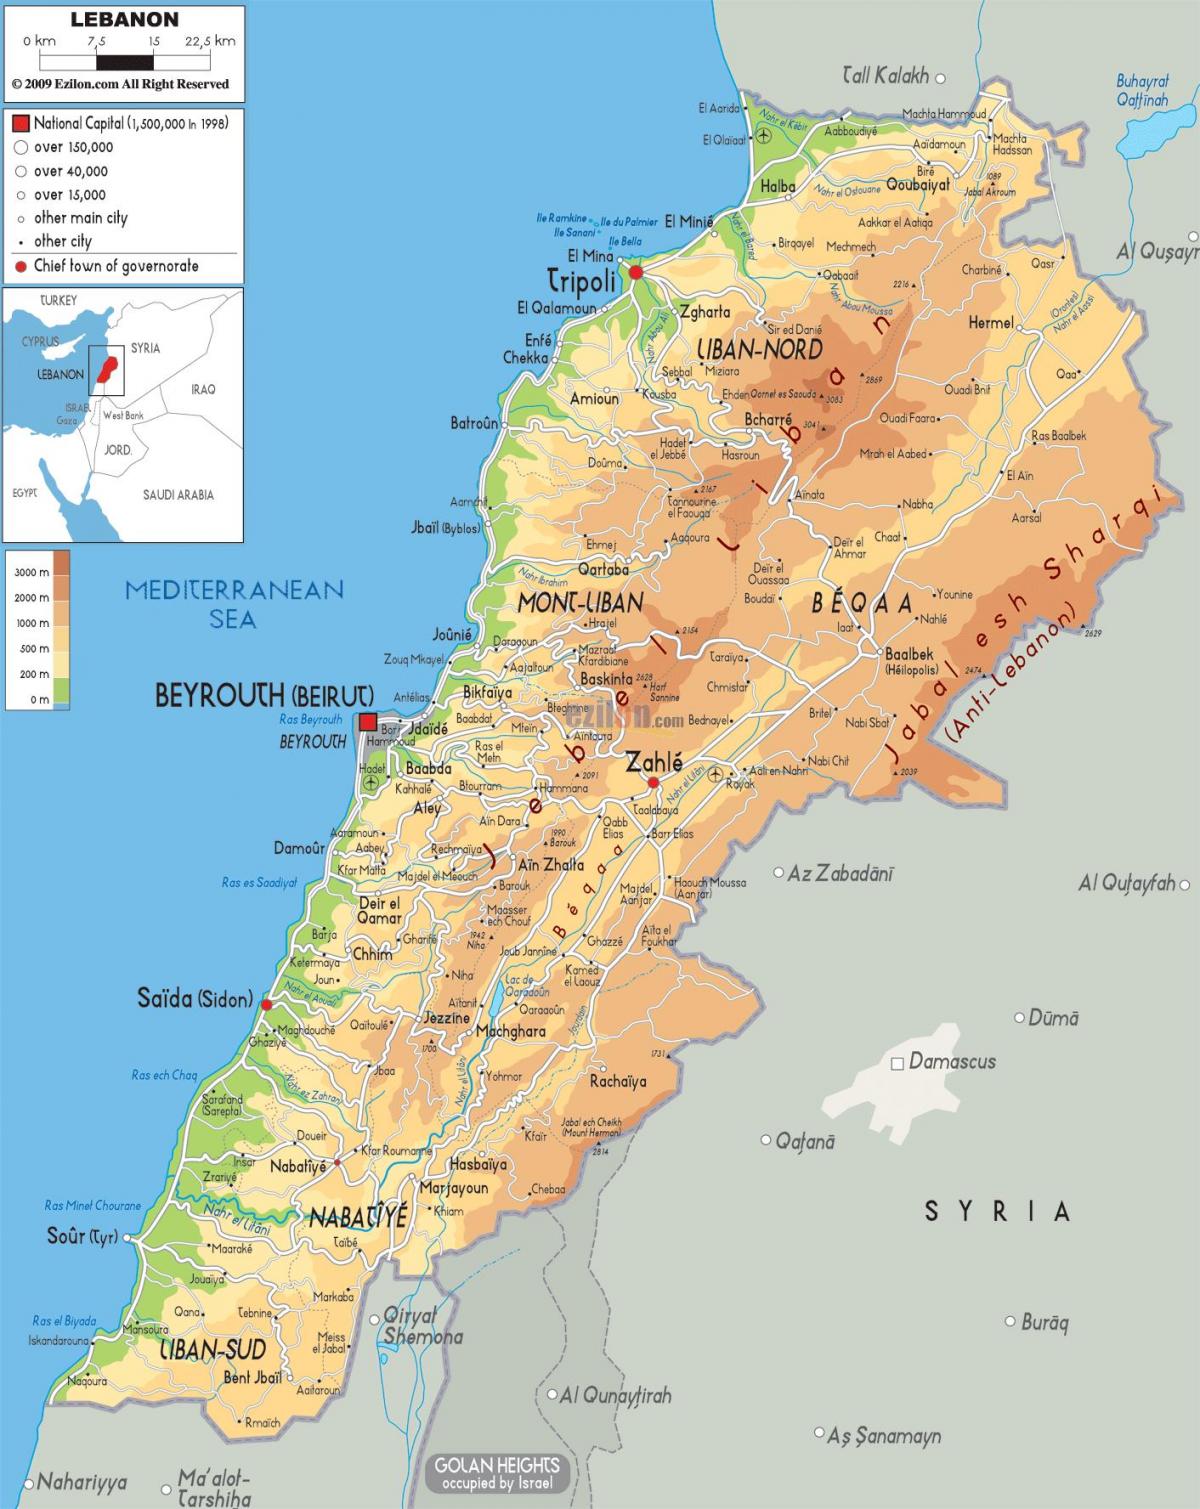 mapa ng Lebanon pisikal na